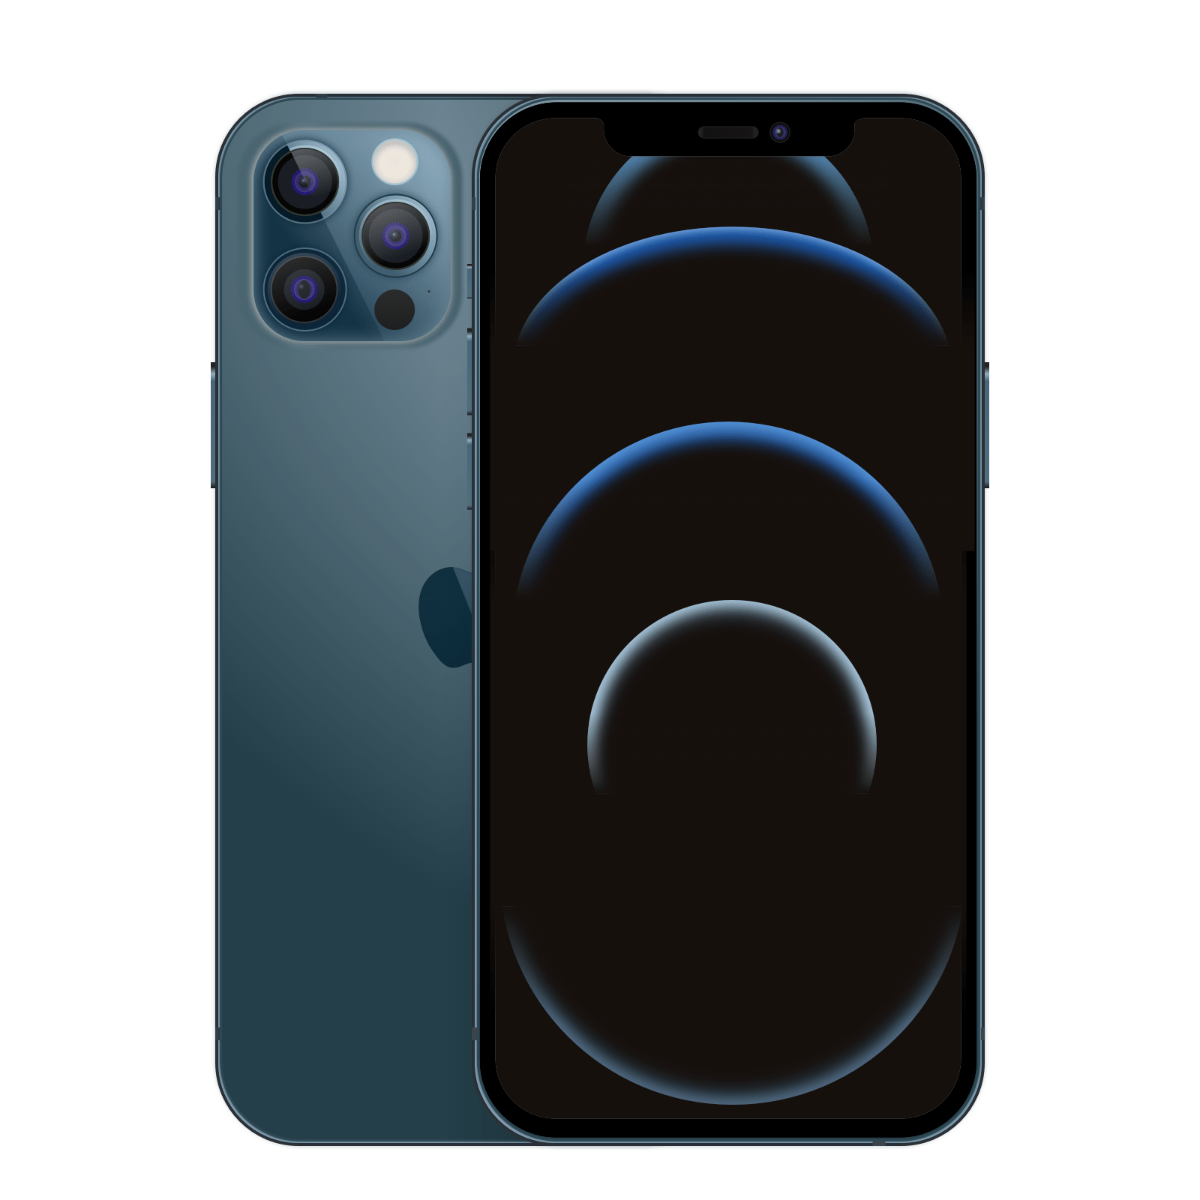 Apple iPhone 12 Pro 256 GB – Pazifikblau (Zustand: Sehr gut)